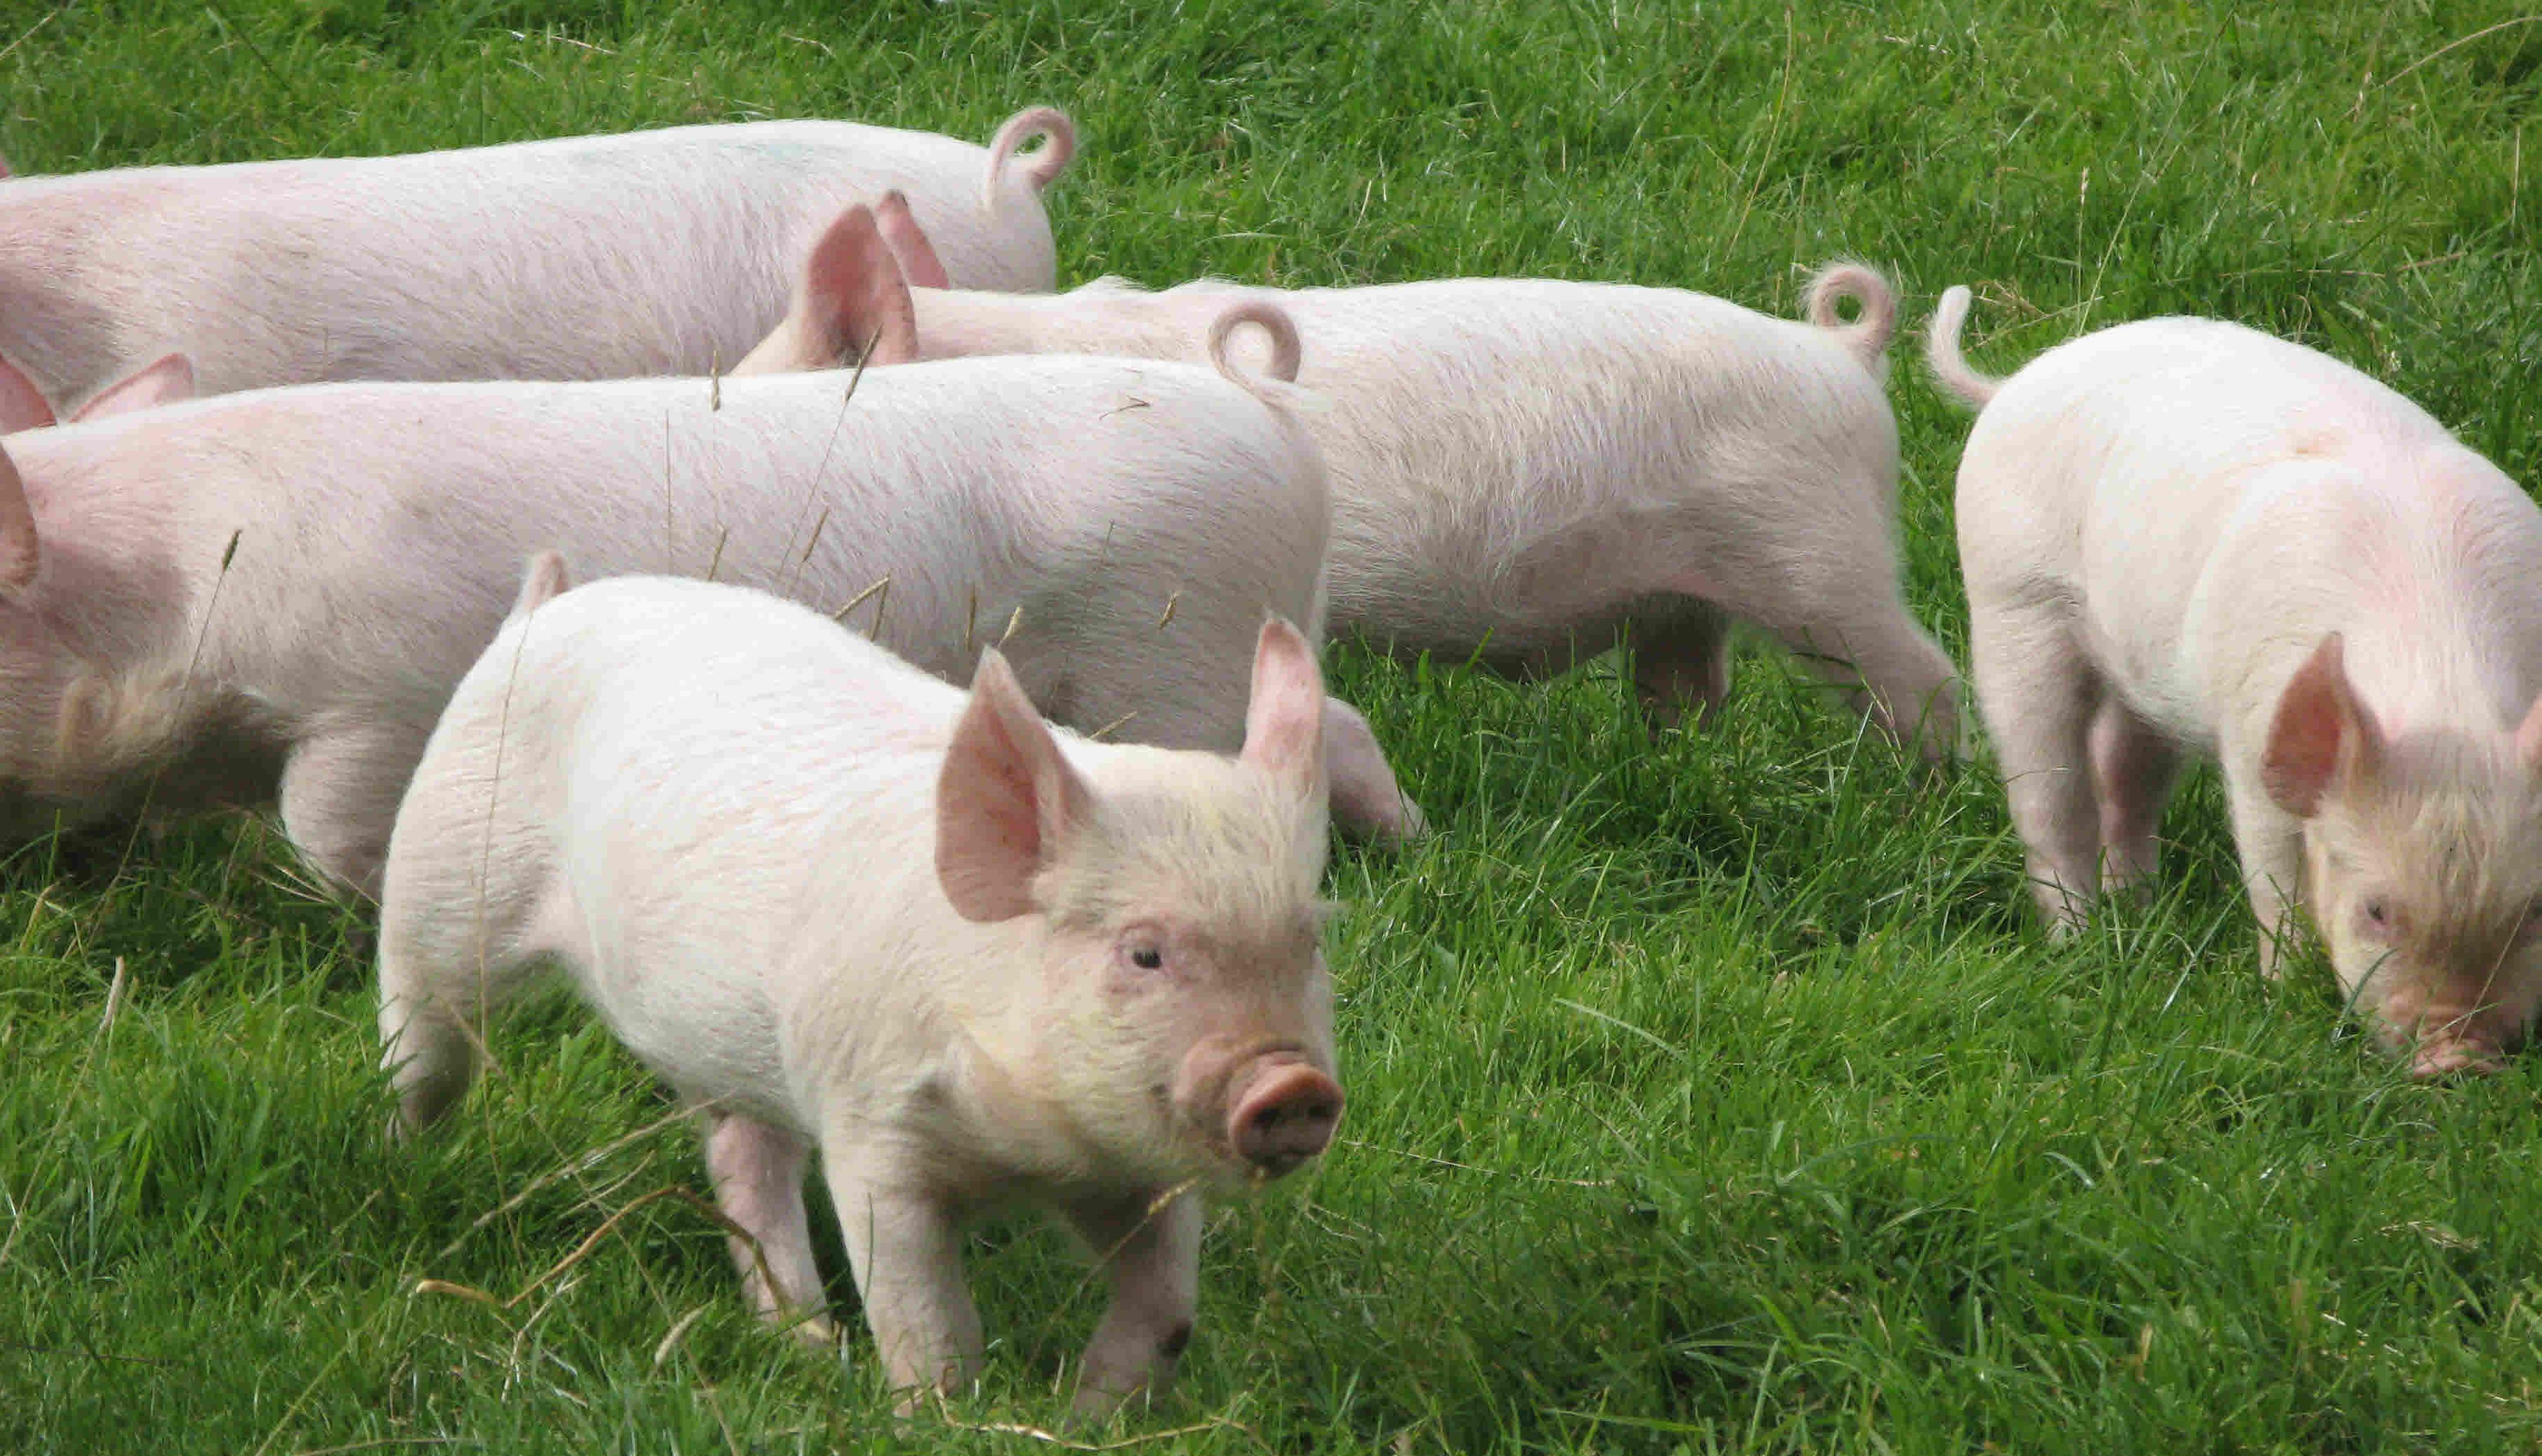 Імпорт свинини в Україну виріс в 7,5 раз – аналітики Pro-Consulting. Капітал